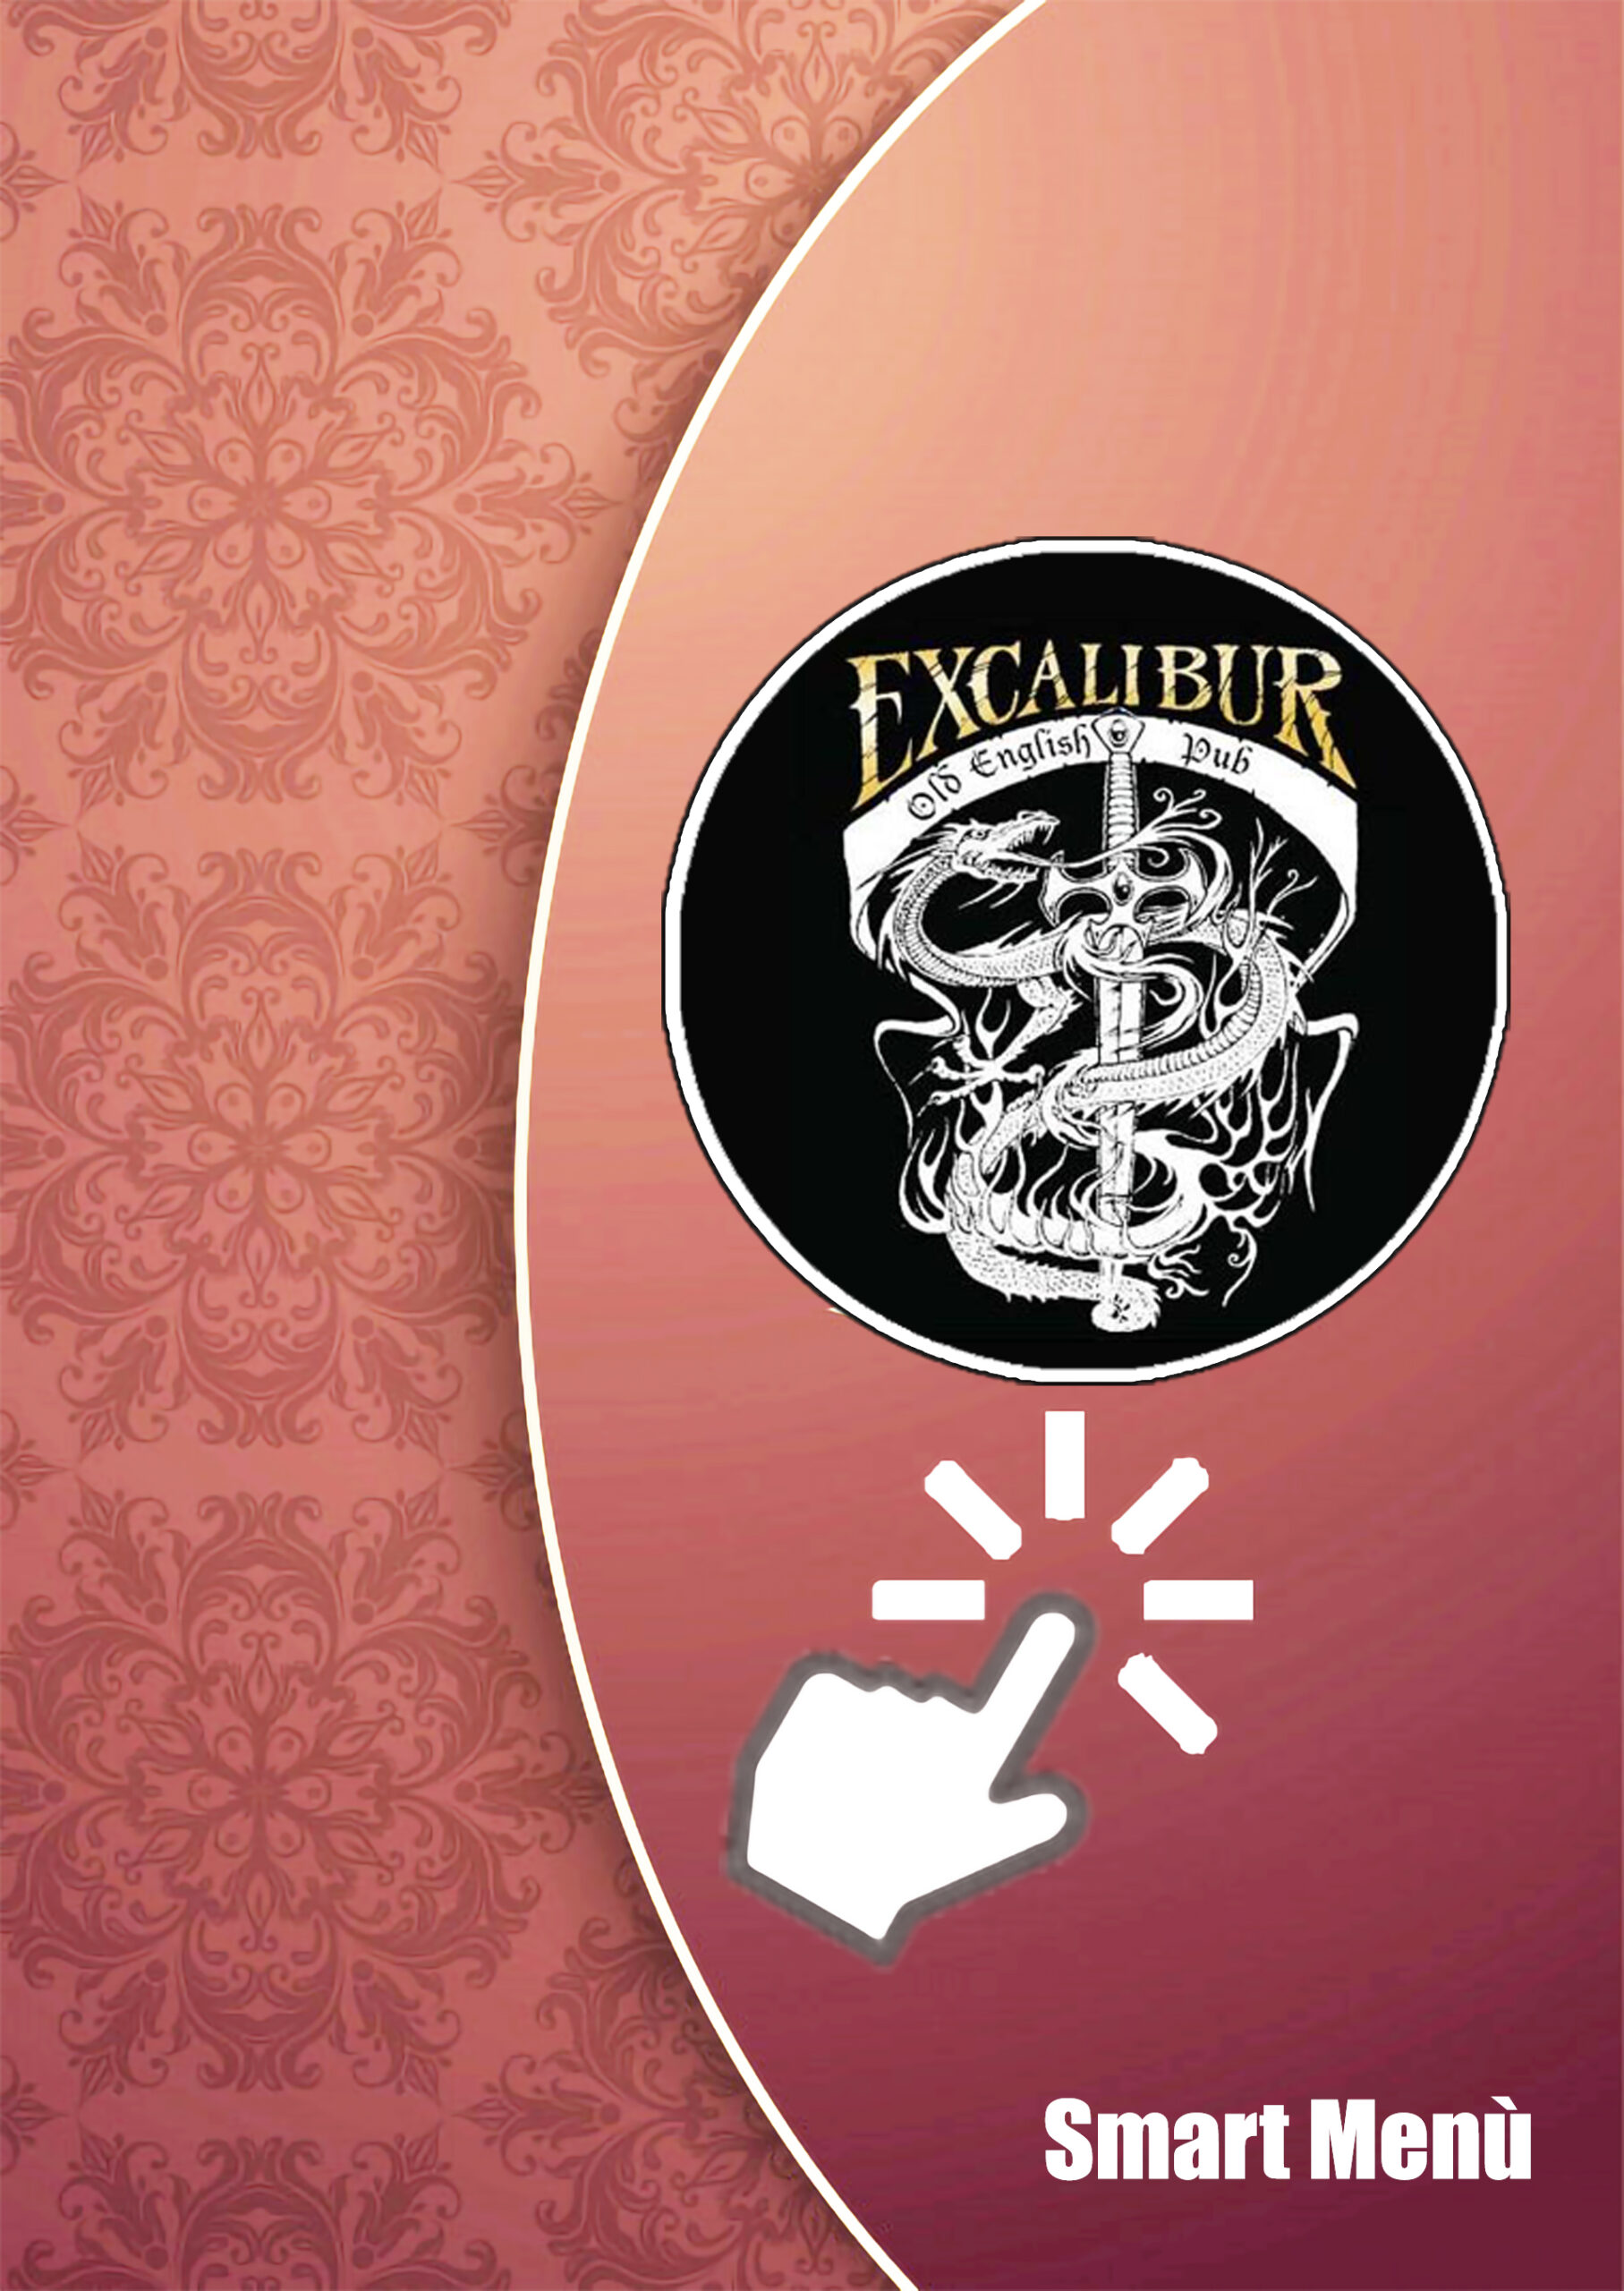 menu classic pub excalibur (1)